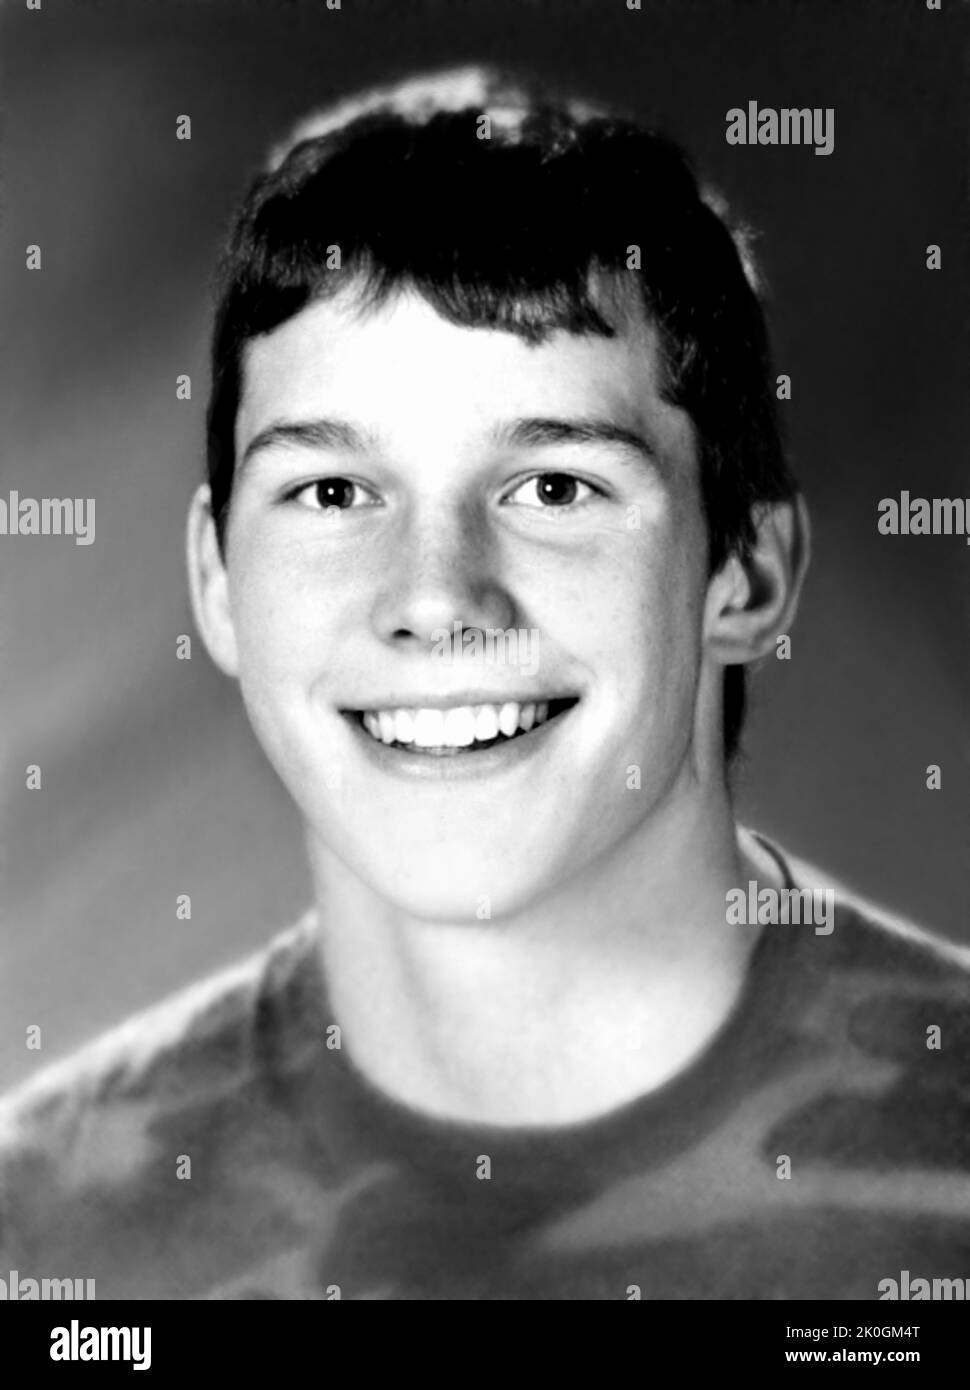 1996 c., USA : le célèbre acteur américain CHRIS PRATT ( né le 21 juin 1979 ) quand était un jeune garçon de 17 ans . Photographe inconnu de l'Annuaire de l'école secondaire . - HISTOIRE - FOTO STORICHE - ATTORE - FILM - CINÉMA - SEX SYMBOL - personalità da ADOLESCENTE - RAGAZZO - da giovane - personnalité personnalités quand était jeune - INFANZIA - ENFANCE - sourire - sorriso - PORTRAIT - RITRATTO --- ARCHIVIO GBB Banque D'Images